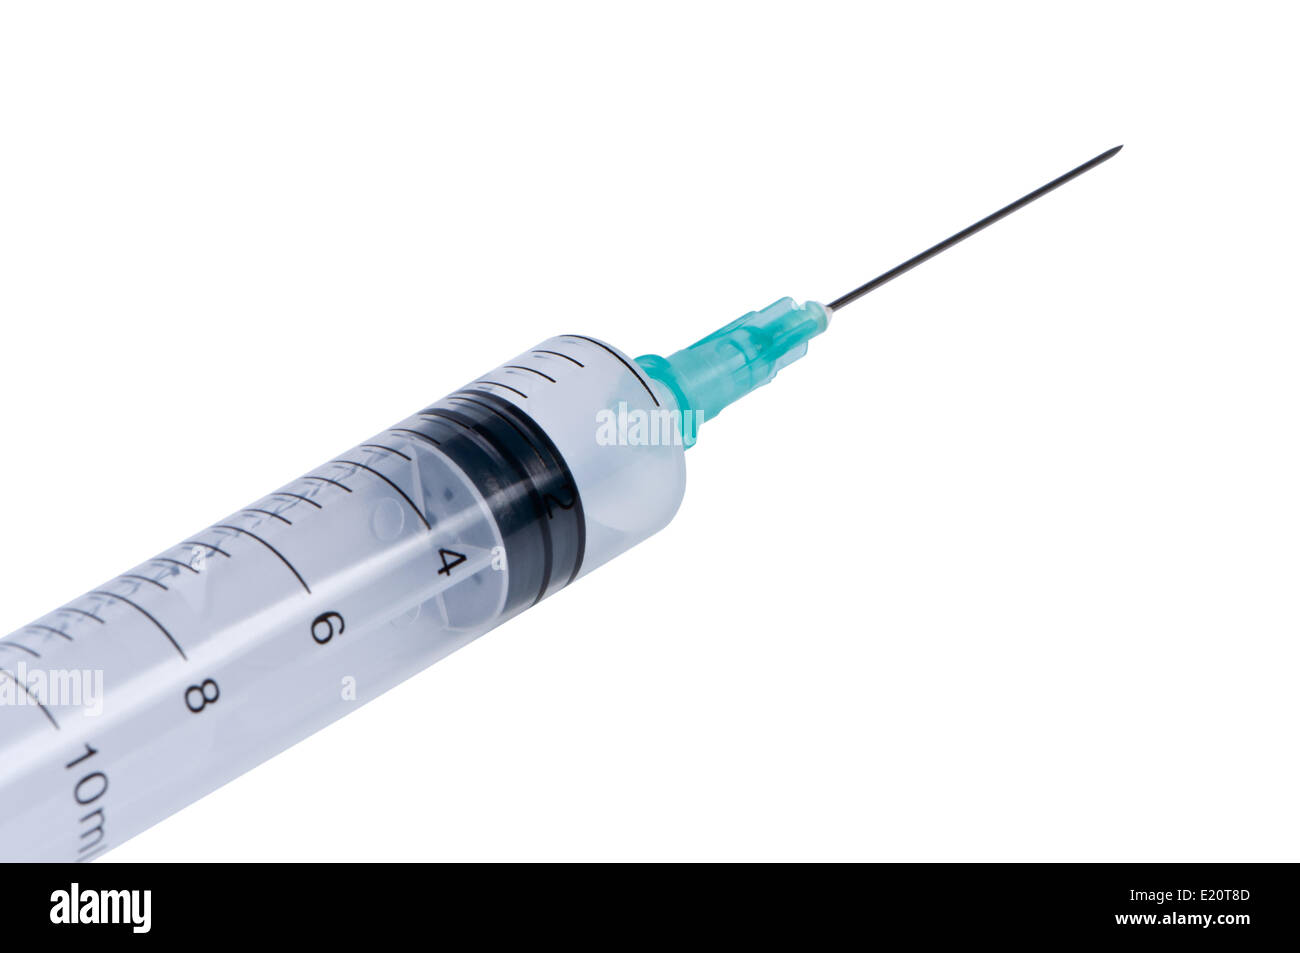 Medical syringe isolate on white background. Stock Photo